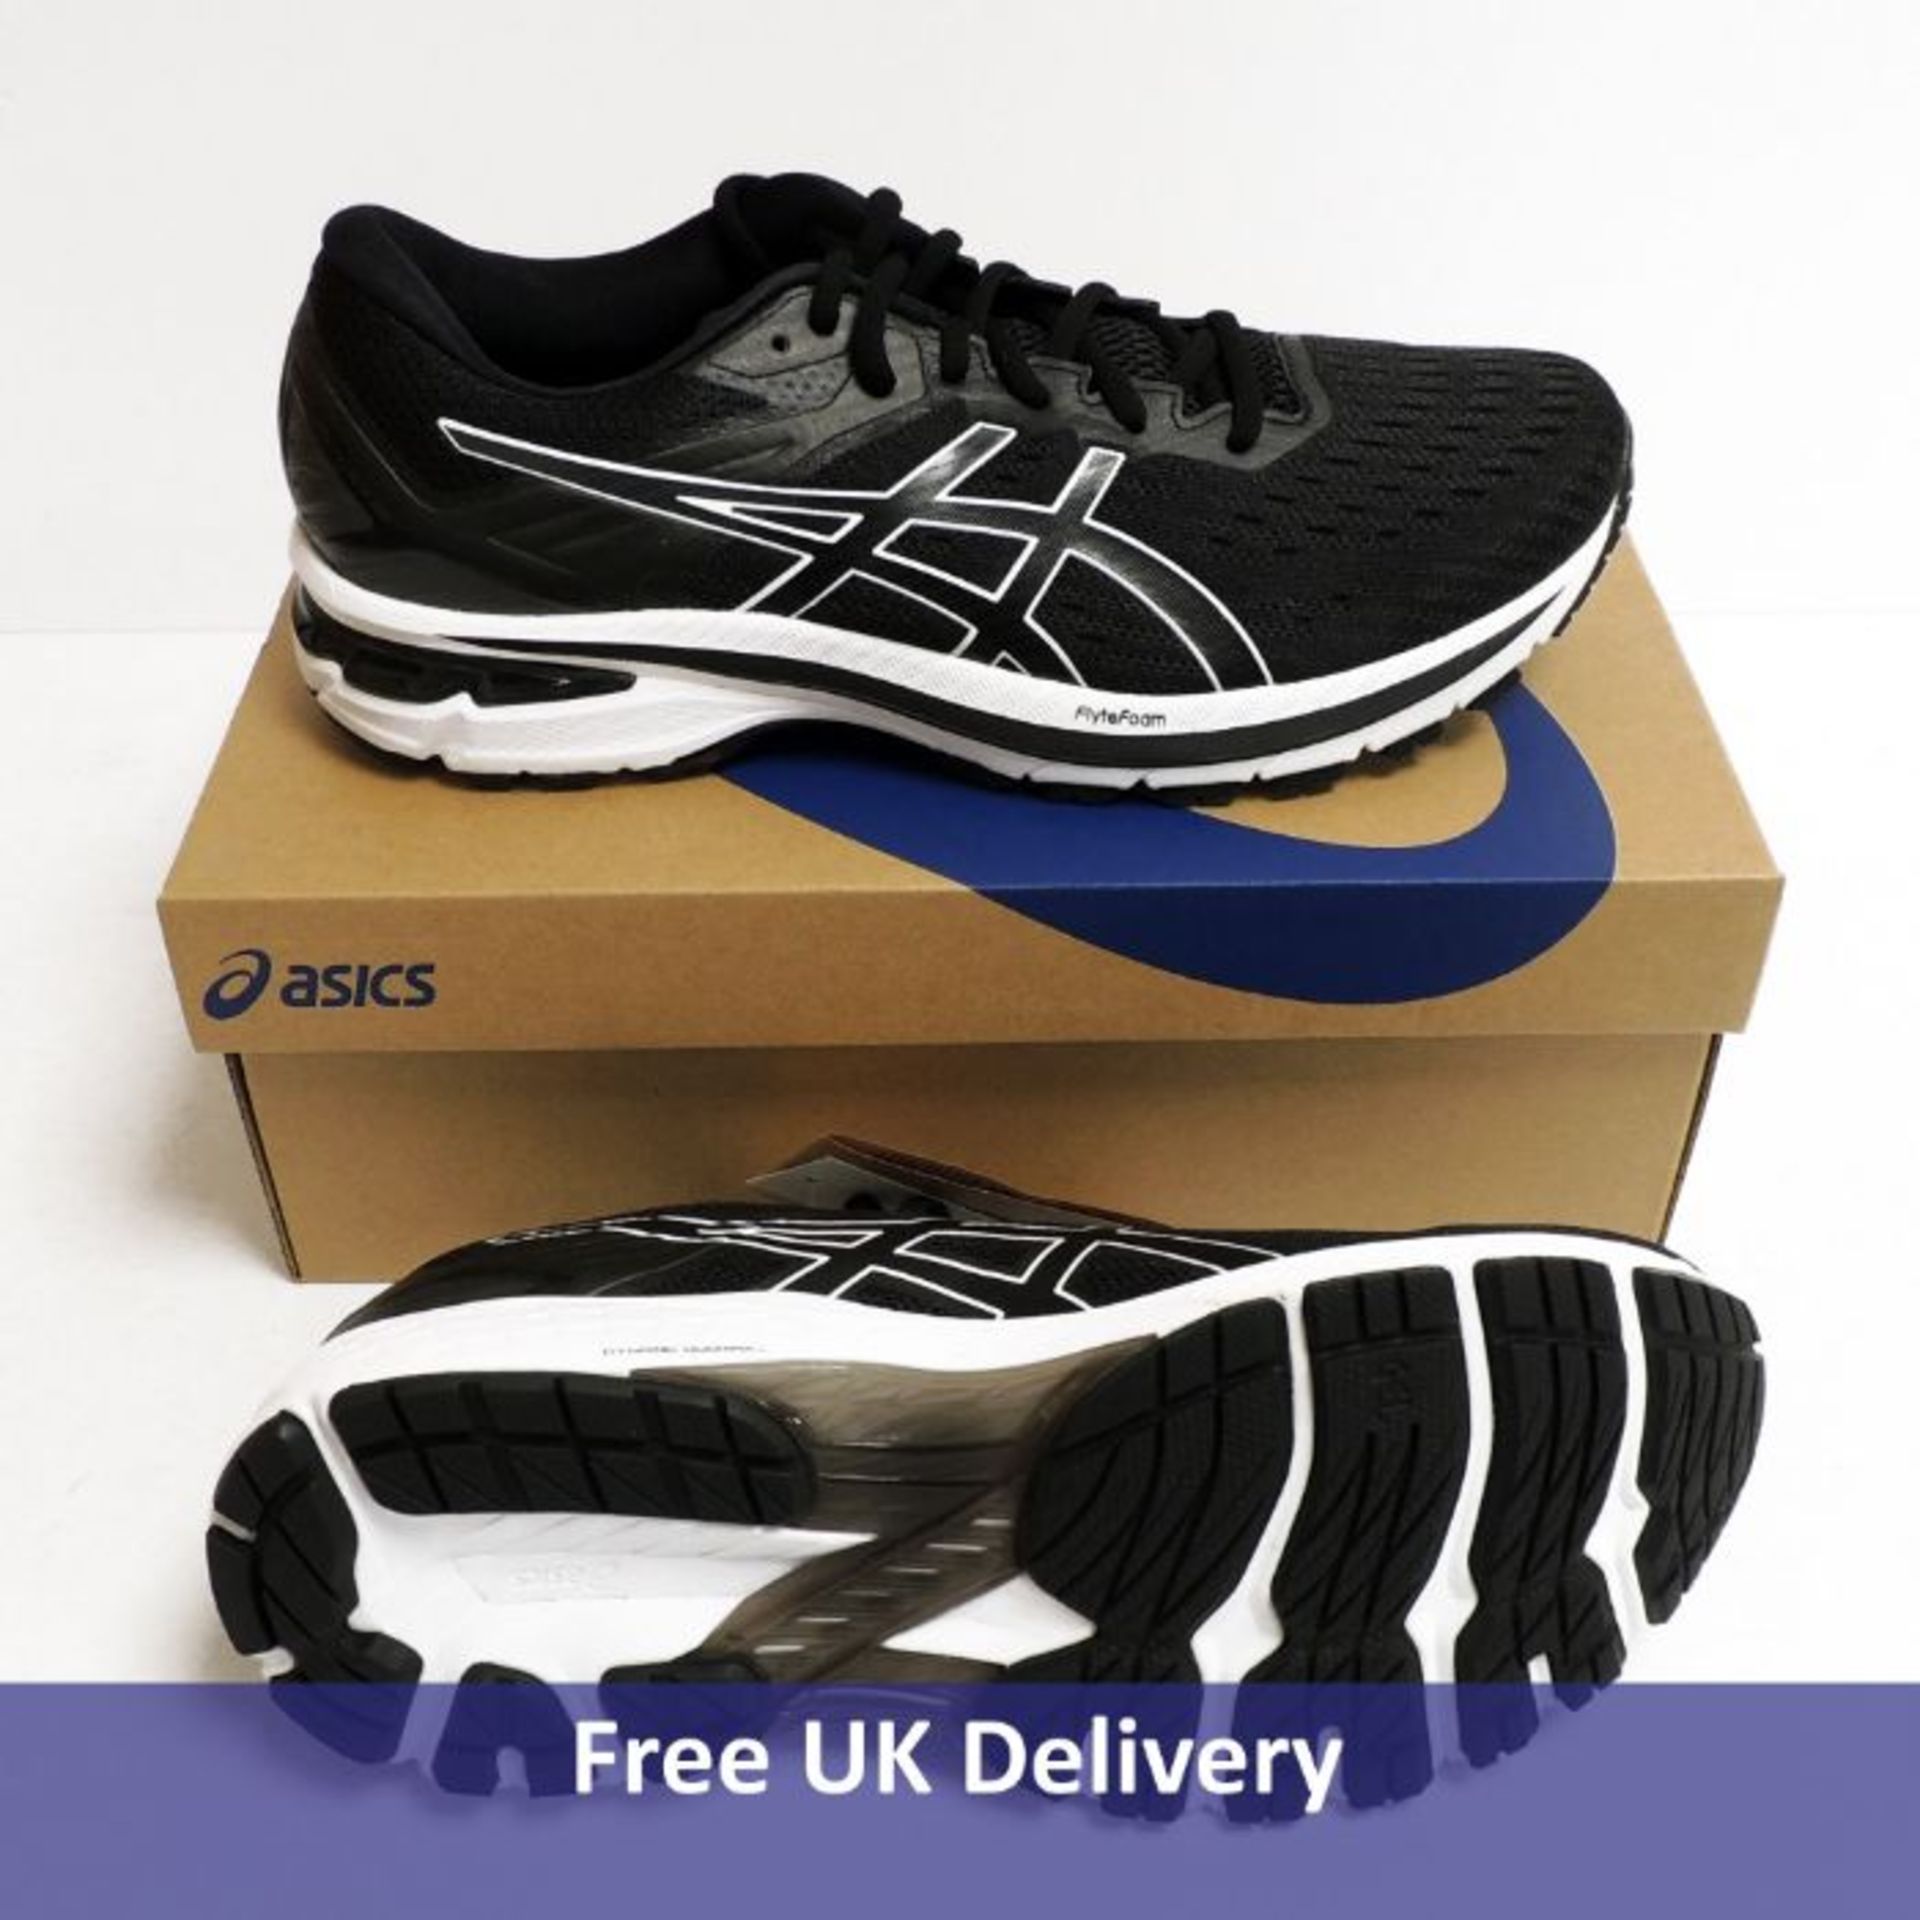 Asics GT 2000 9, Men's Running Shoe, Black and White, UK 9